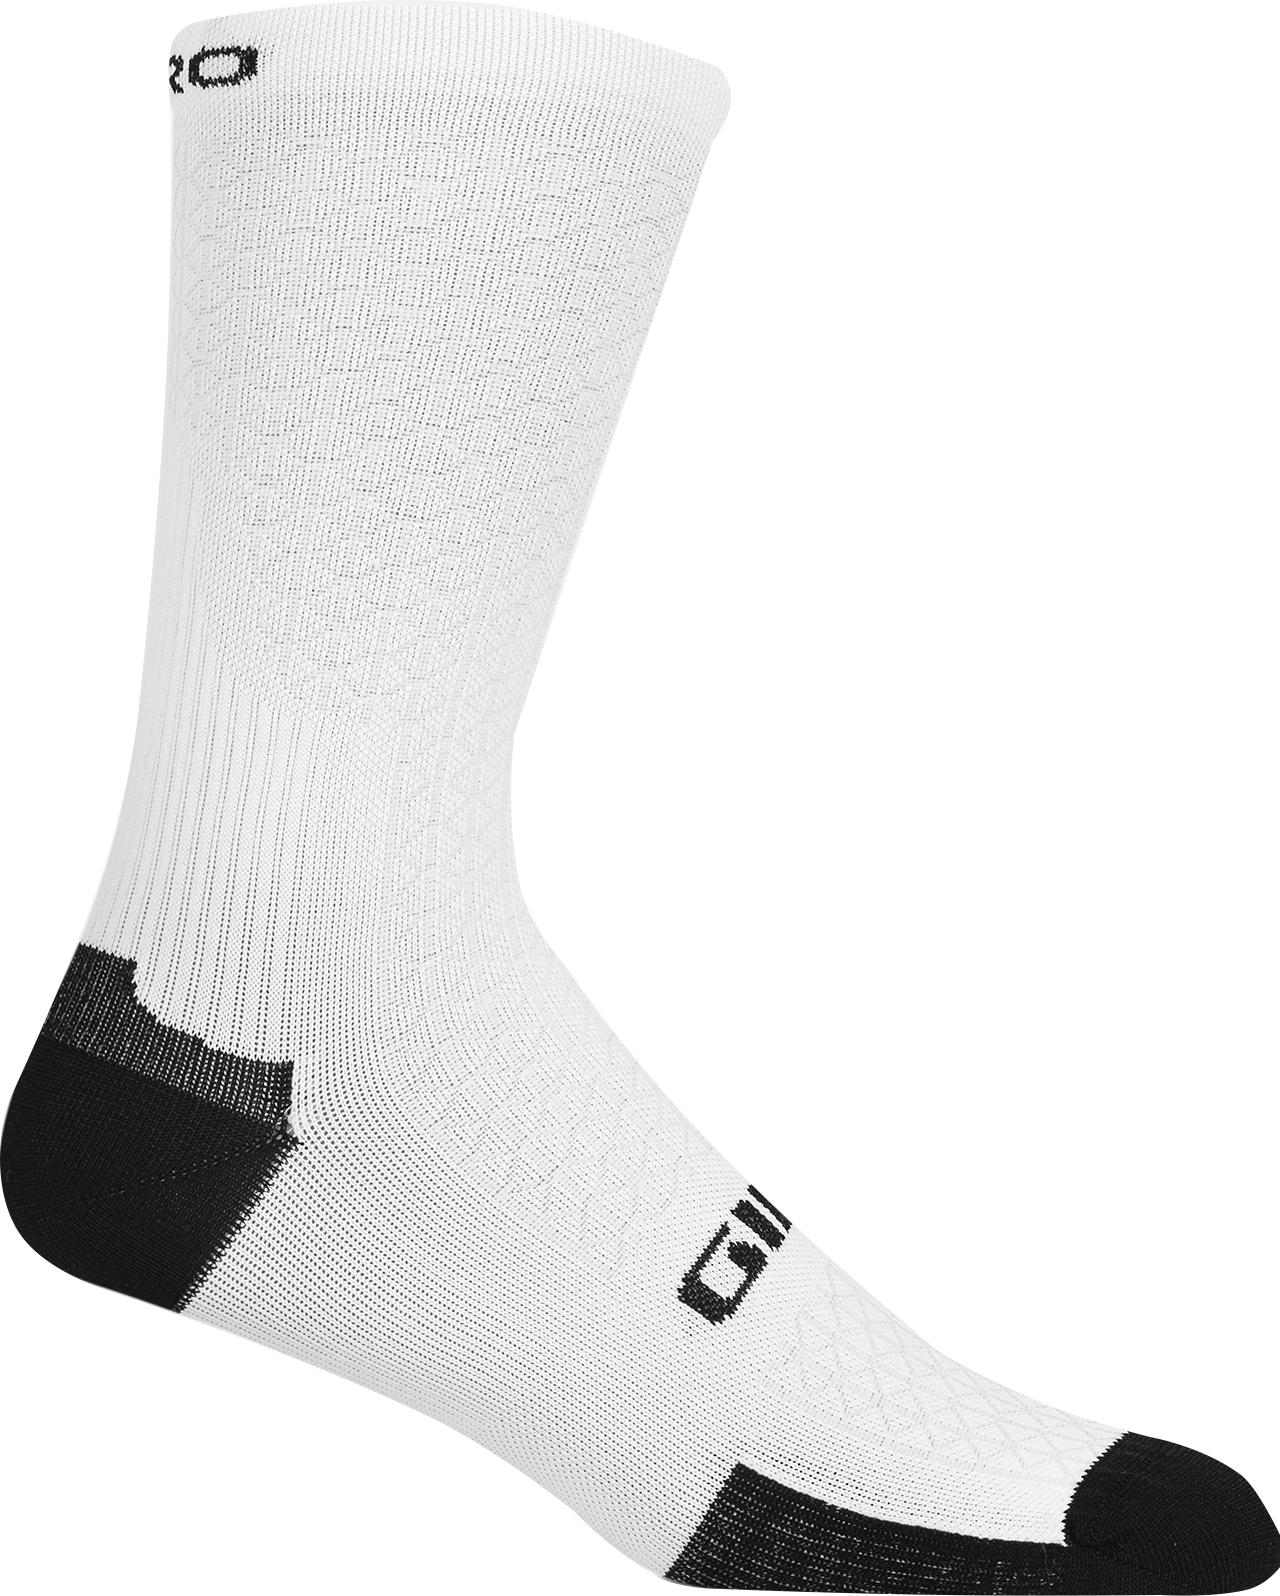 Giro Hrc Team Socks - White/black